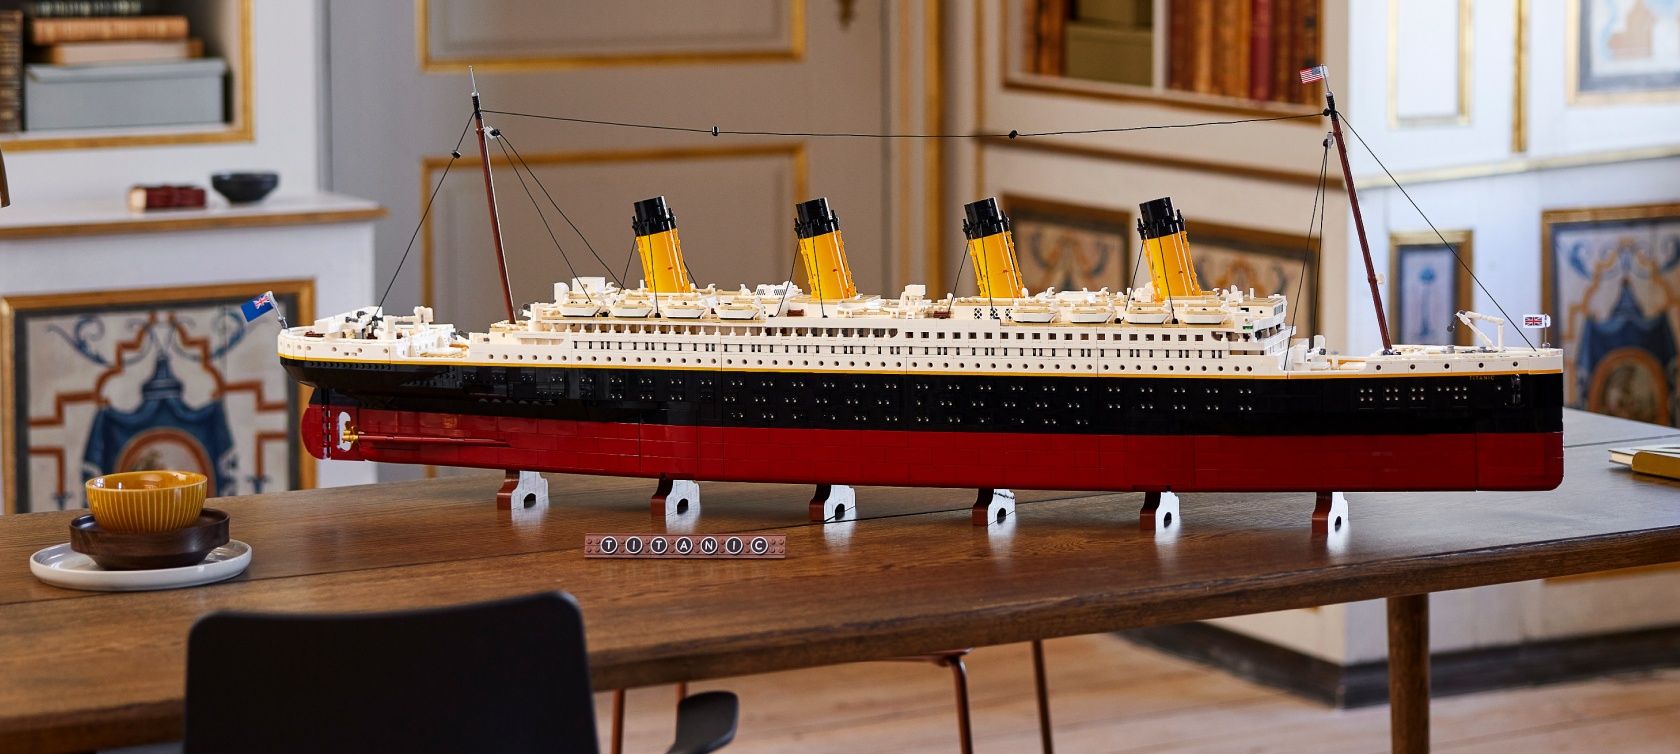 Титаник Лего конструктор